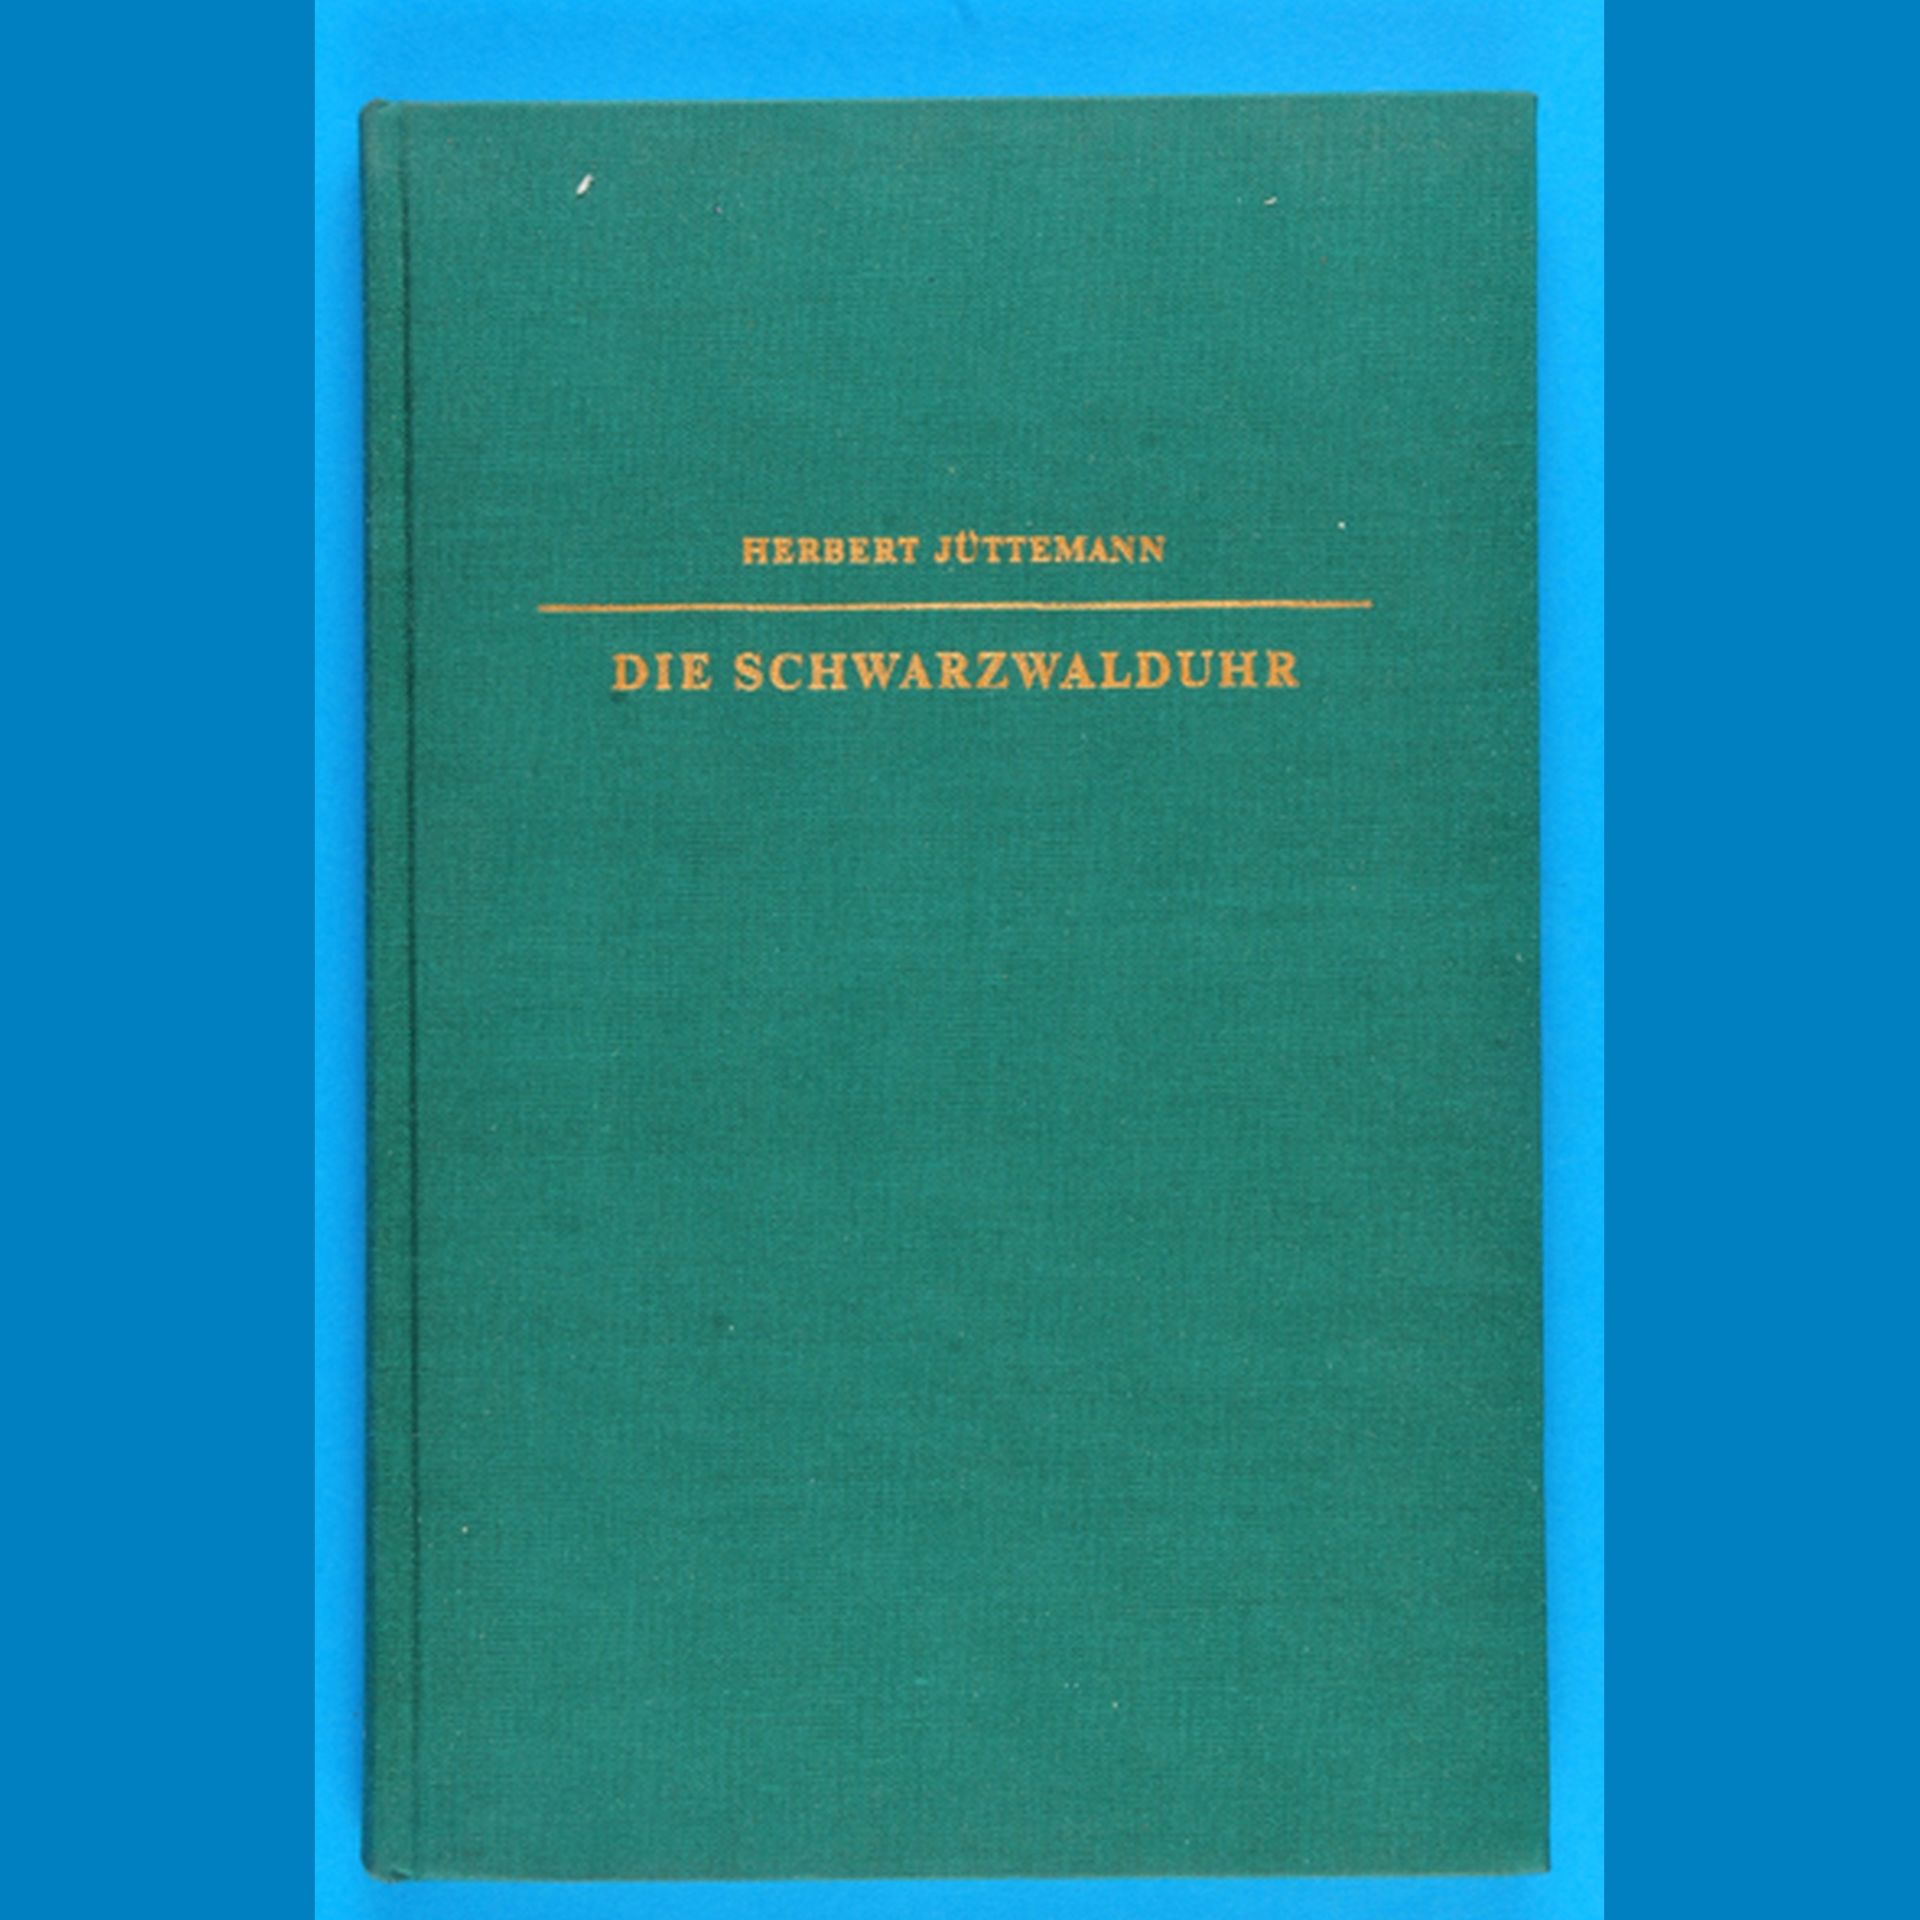 Herbert Jüttemann, Die Schwarzwalduhr, 1972, 146 Seiten mit 107 Abbildungen und acht farbigen